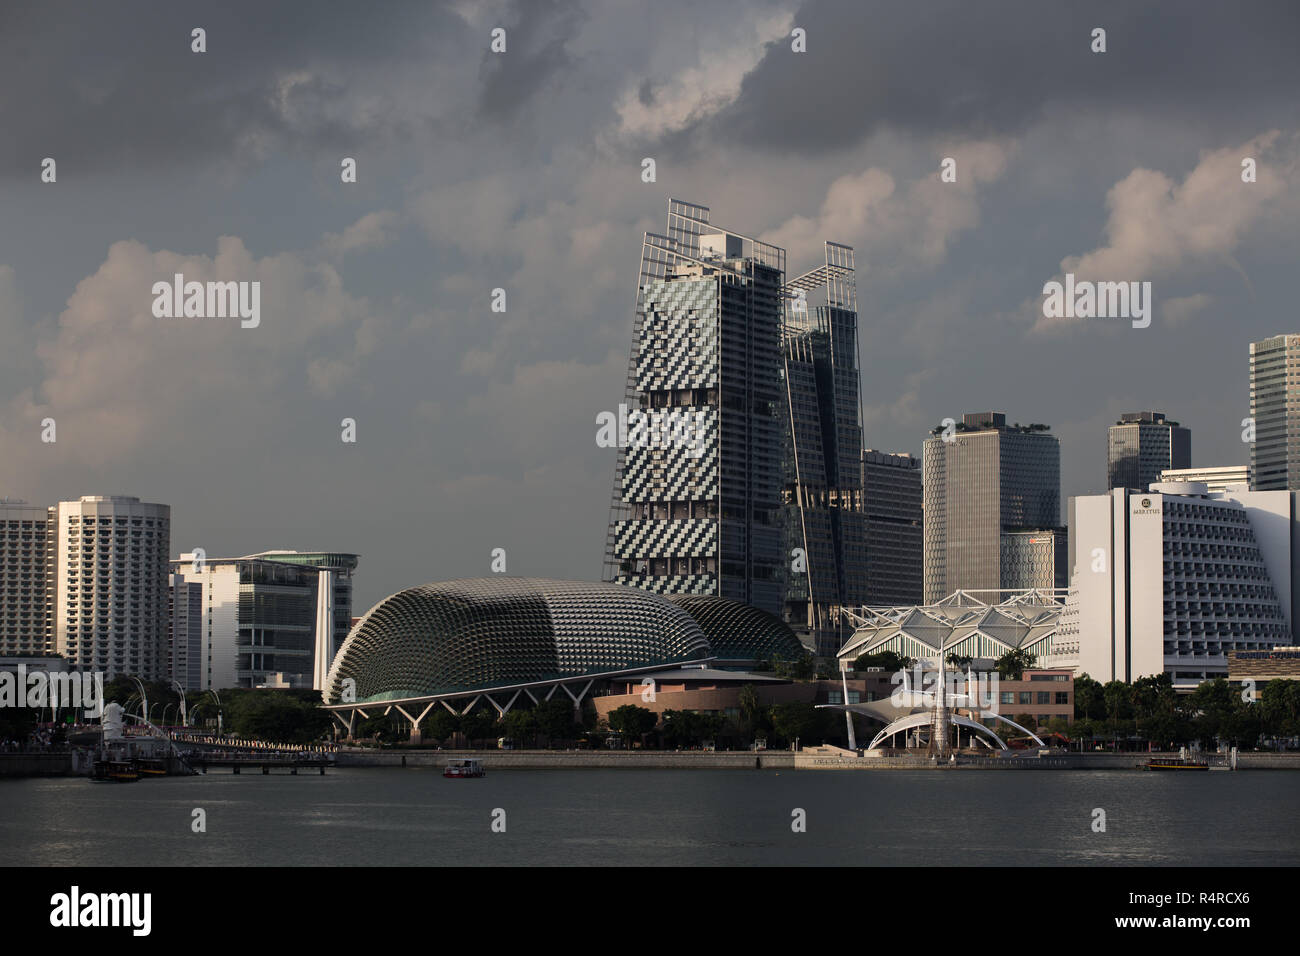 Ein düsteres und trübes Wetter im Stadtbild, das Ausfallzeiten aufgrund der Auswirkungen der Wuhan-Virus-Wirtschaft darstellt, Singapur Stockfoto